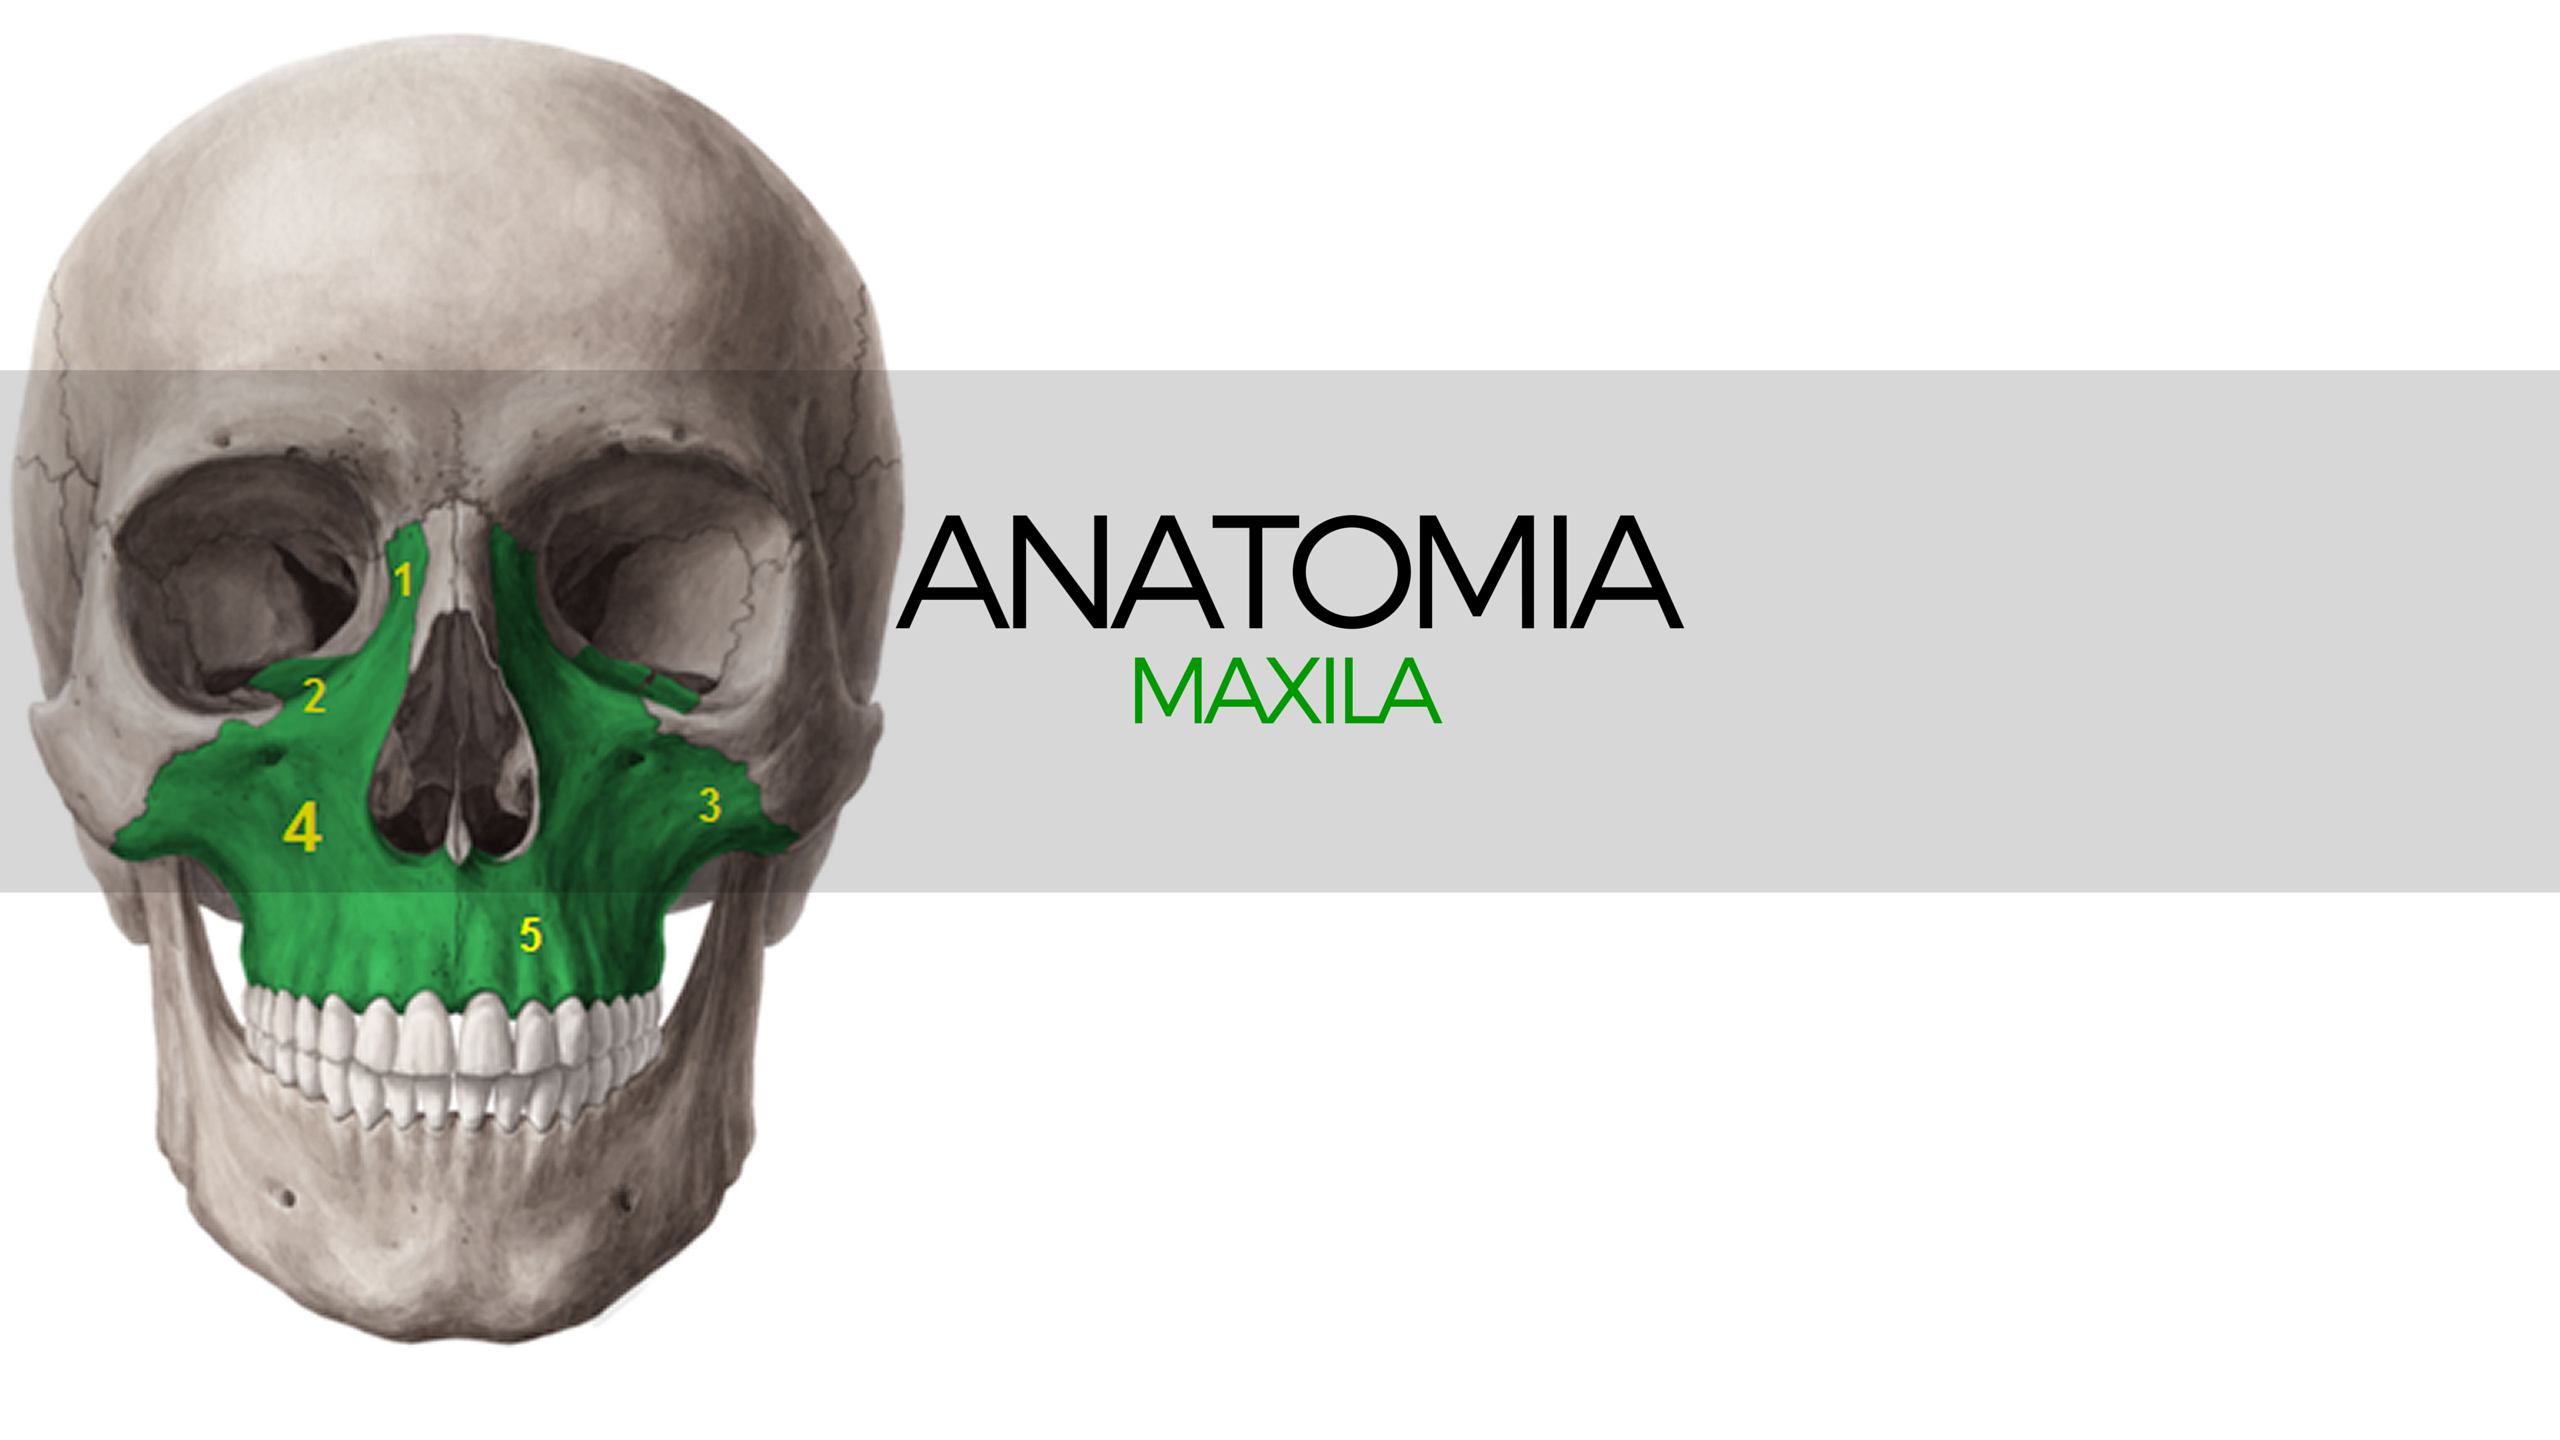 Dr José Antônio de Carvalho Soares - 🌐Importantíssimo osso do corpo  humano, o maxilar (mandíbula) precisa ser estudado com atenção anatomia.  🌐O que é o maxilar (mandíbula)? 🌐Também chamado de maxila ou